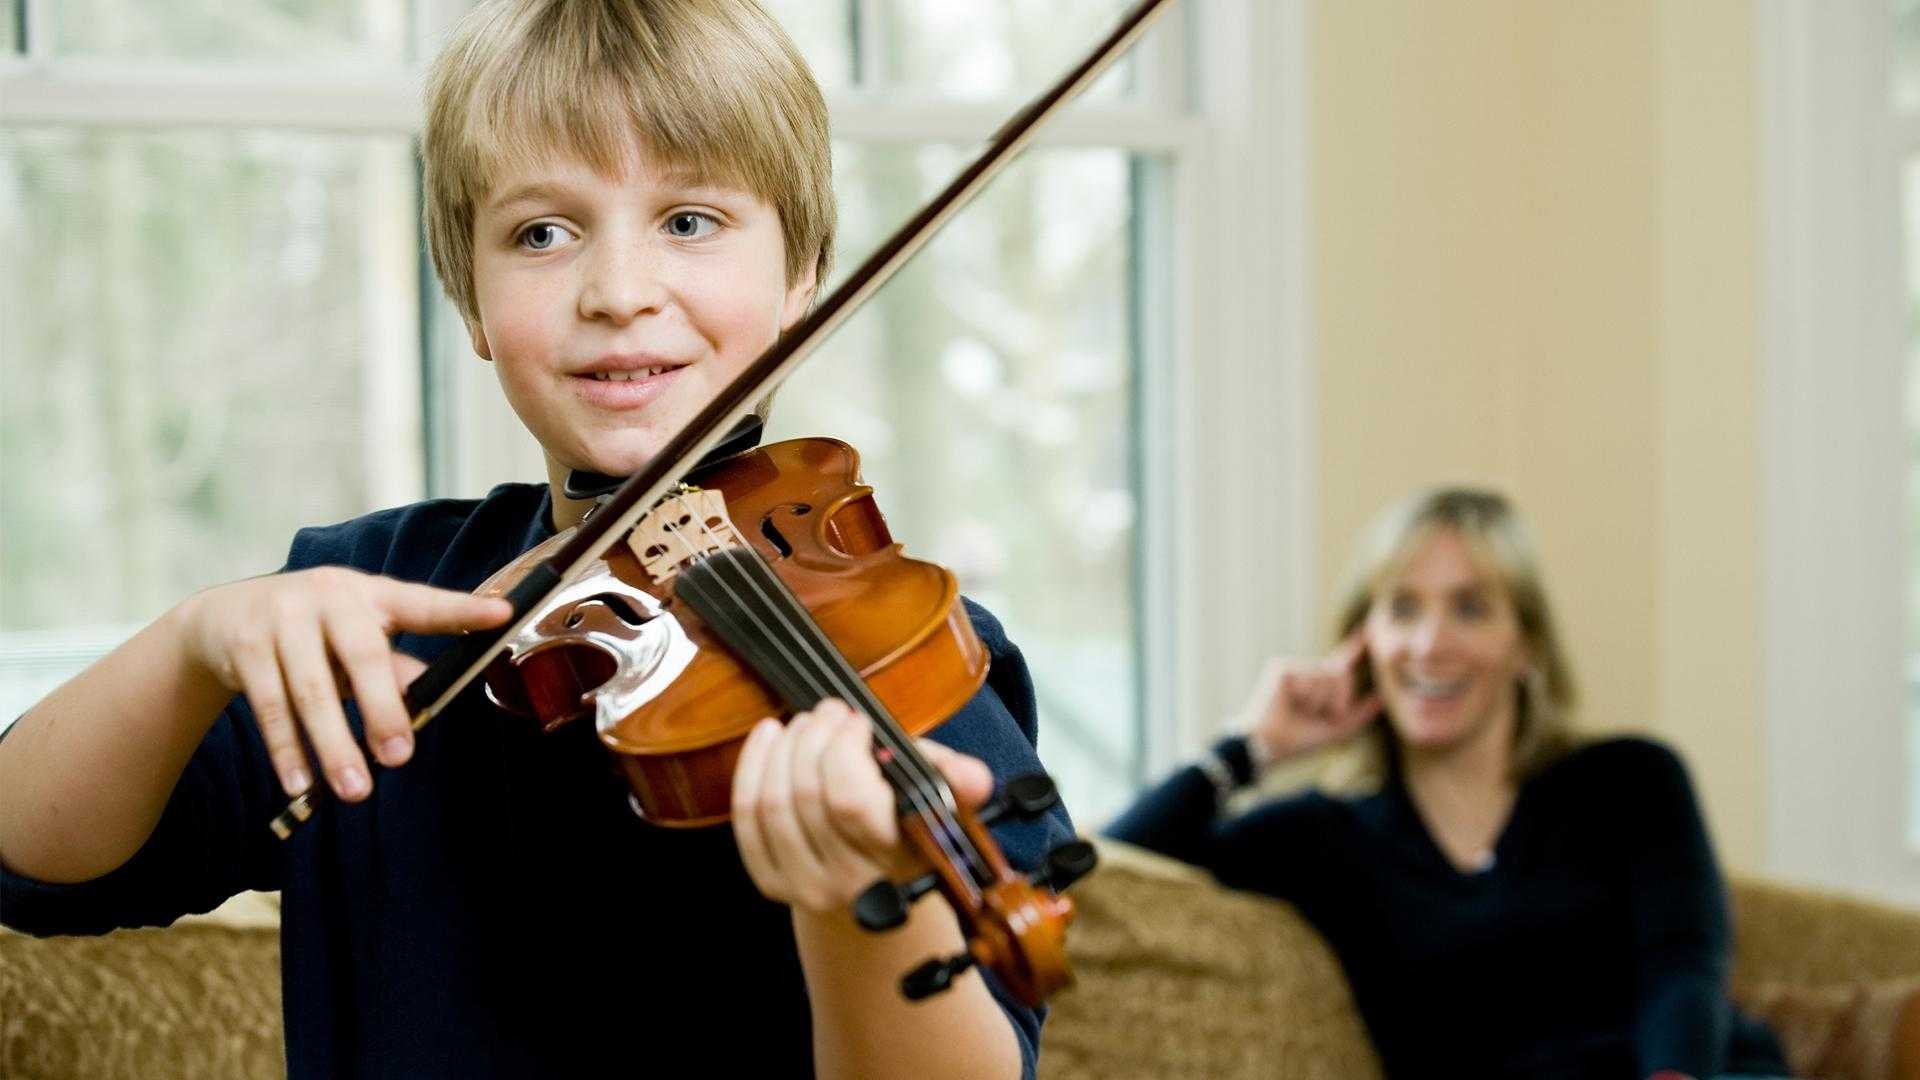 Постановка скрипки. Мальчик со скрипкой. Музыкальные инструменты для детей. Дети музыканты. Скрипка для детей.